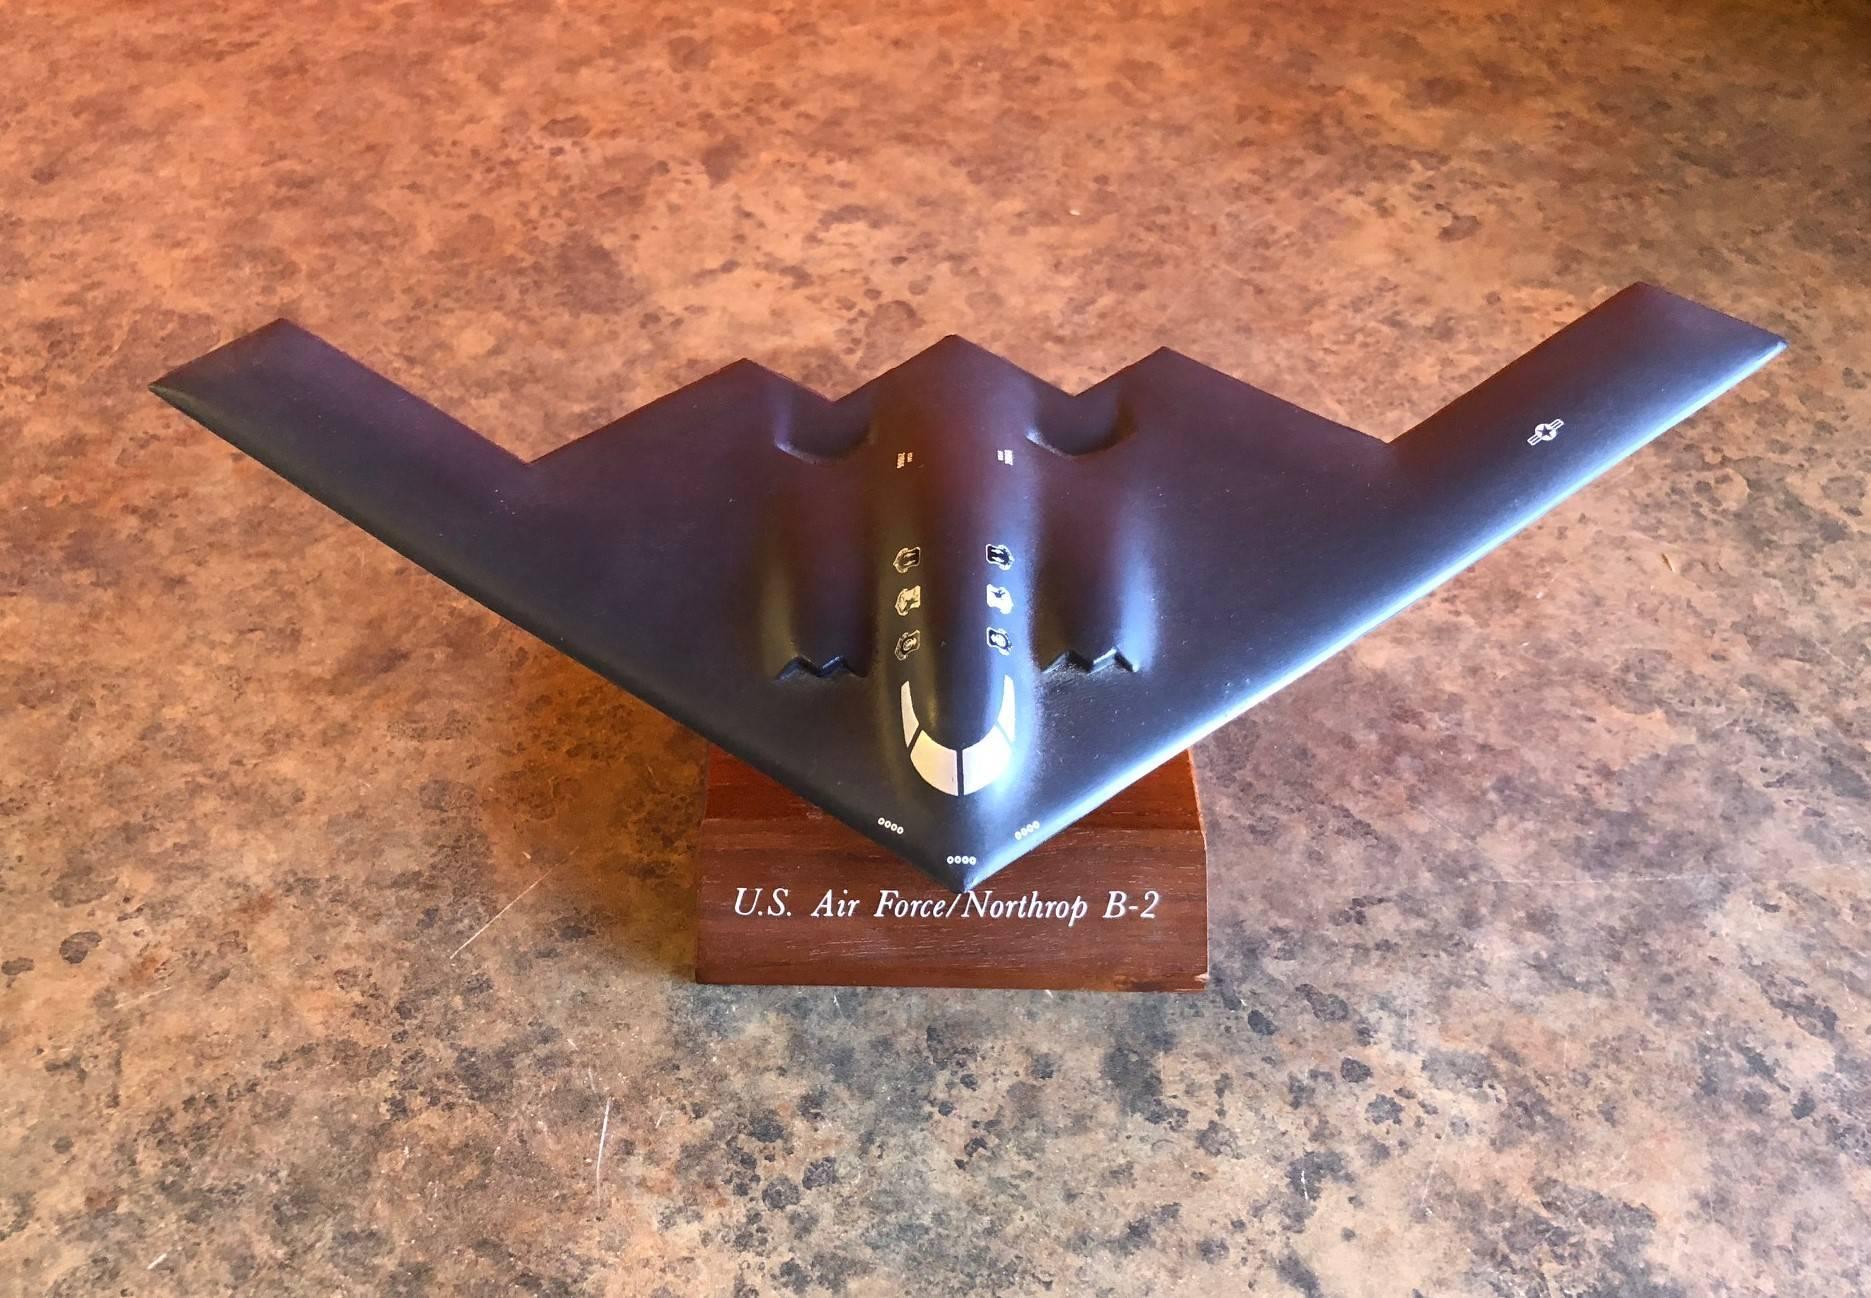 Tischmodell eines B-2-Bombers der Luftwaffe, ca. 1989. Ein sehr cooles Stück aus hochwertigem Kunststoff mit einer Breite von 11